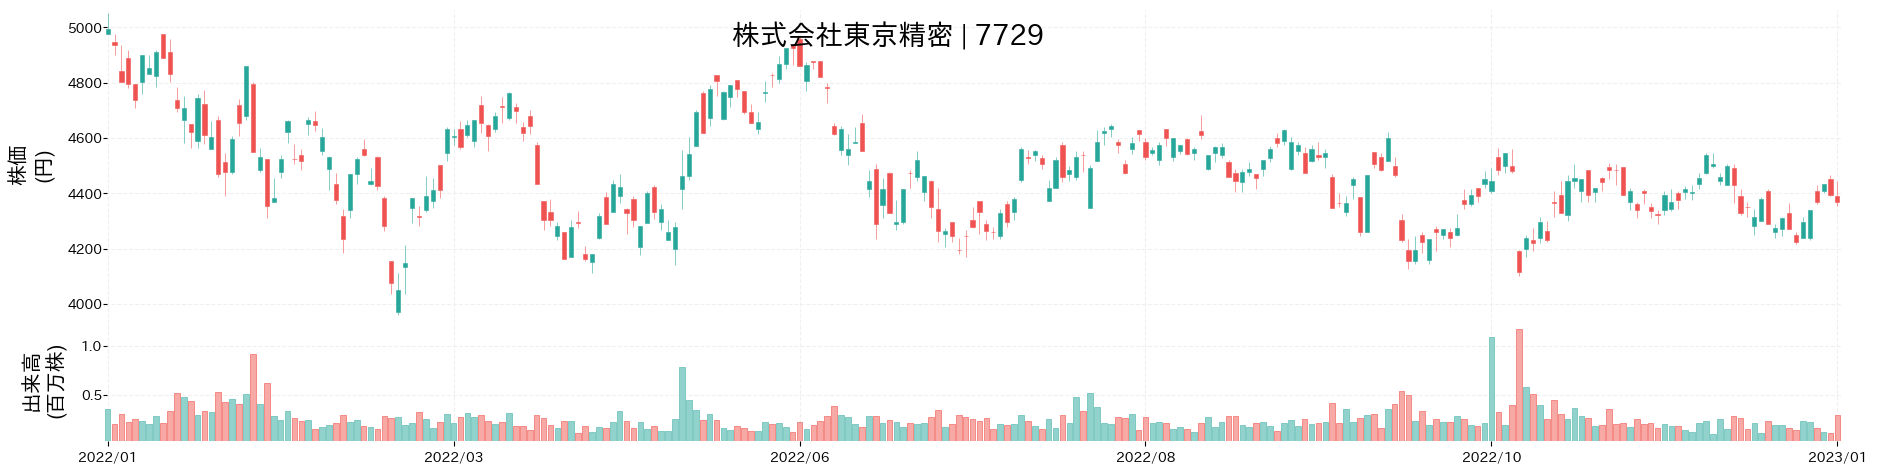 東京精密の株価推移(2022)